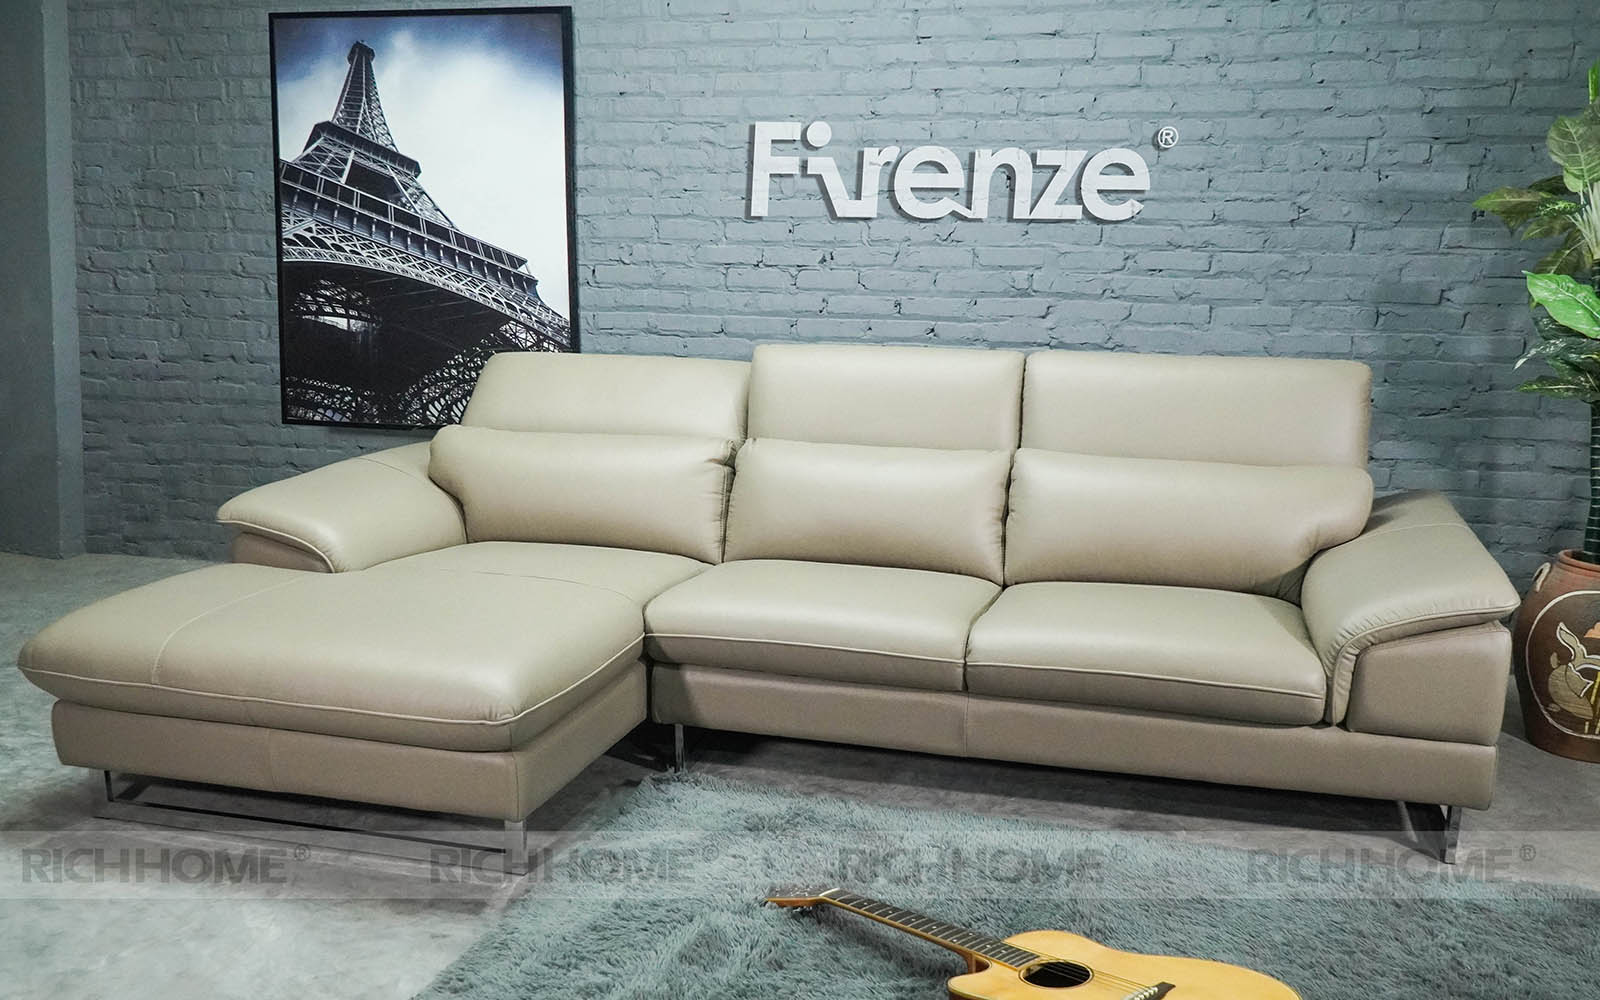 4 kiểu thiết kế sofa nhập khẩu Malaysia ấn tượng nhất - Ảnh 2